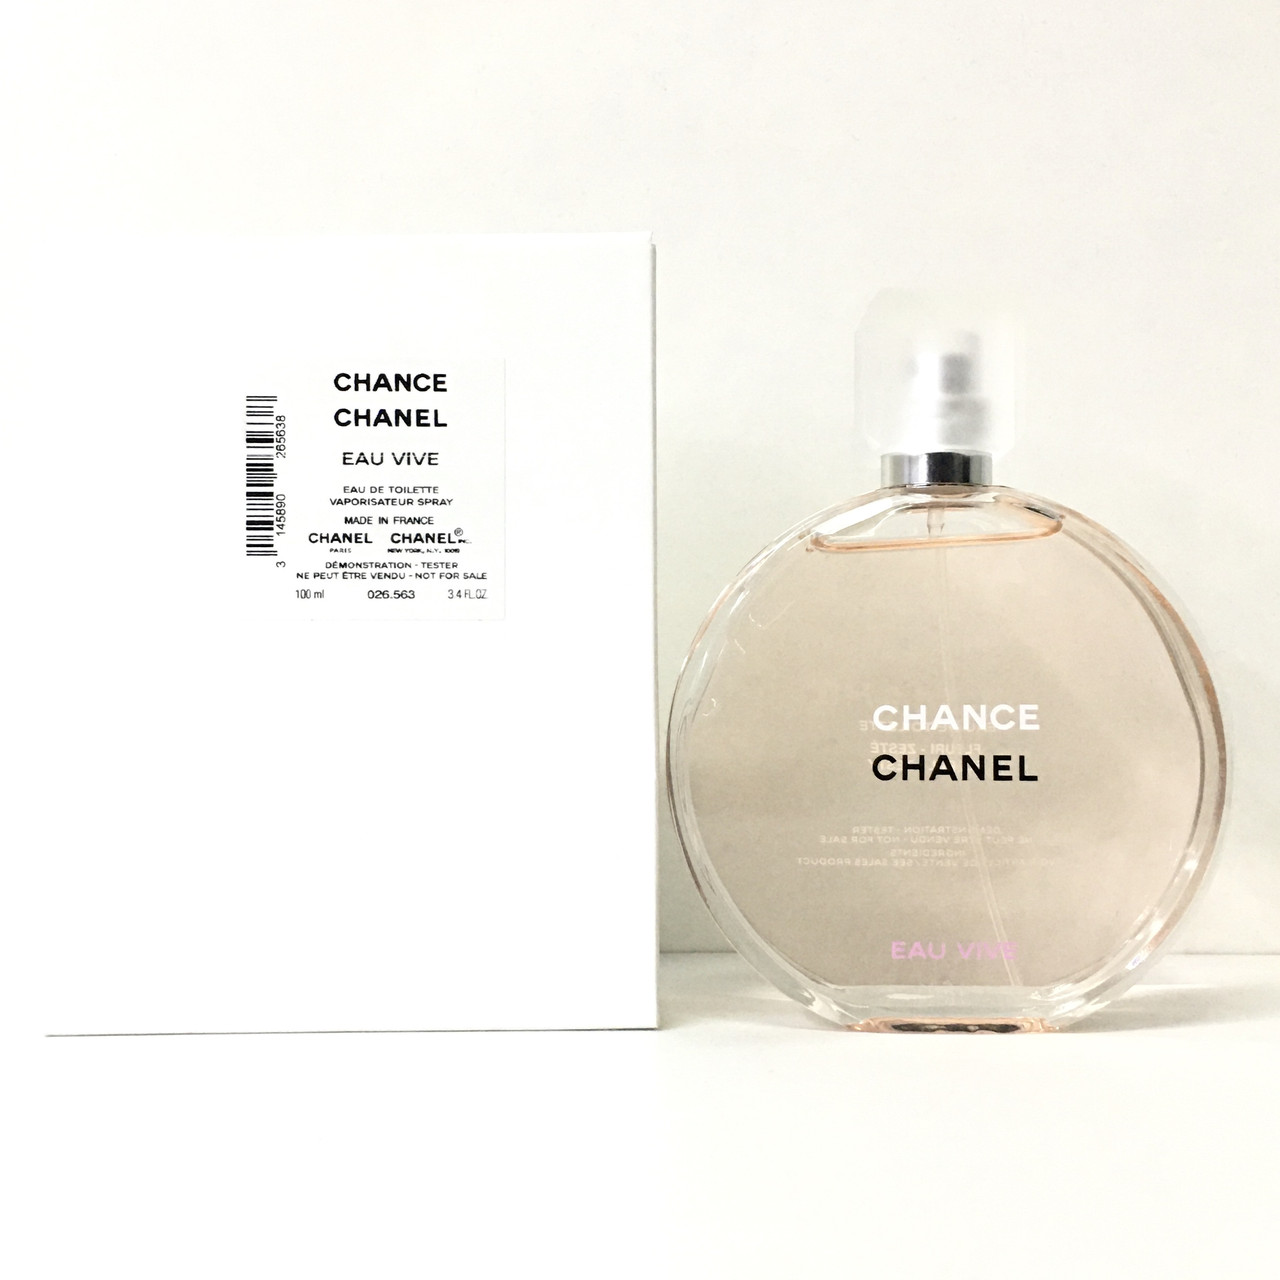 Оригинальные женские духи CHANEL Chance Eau Vive 100ml туалетная вода ТЕСТЕР, цветочный цитрусовый аромат